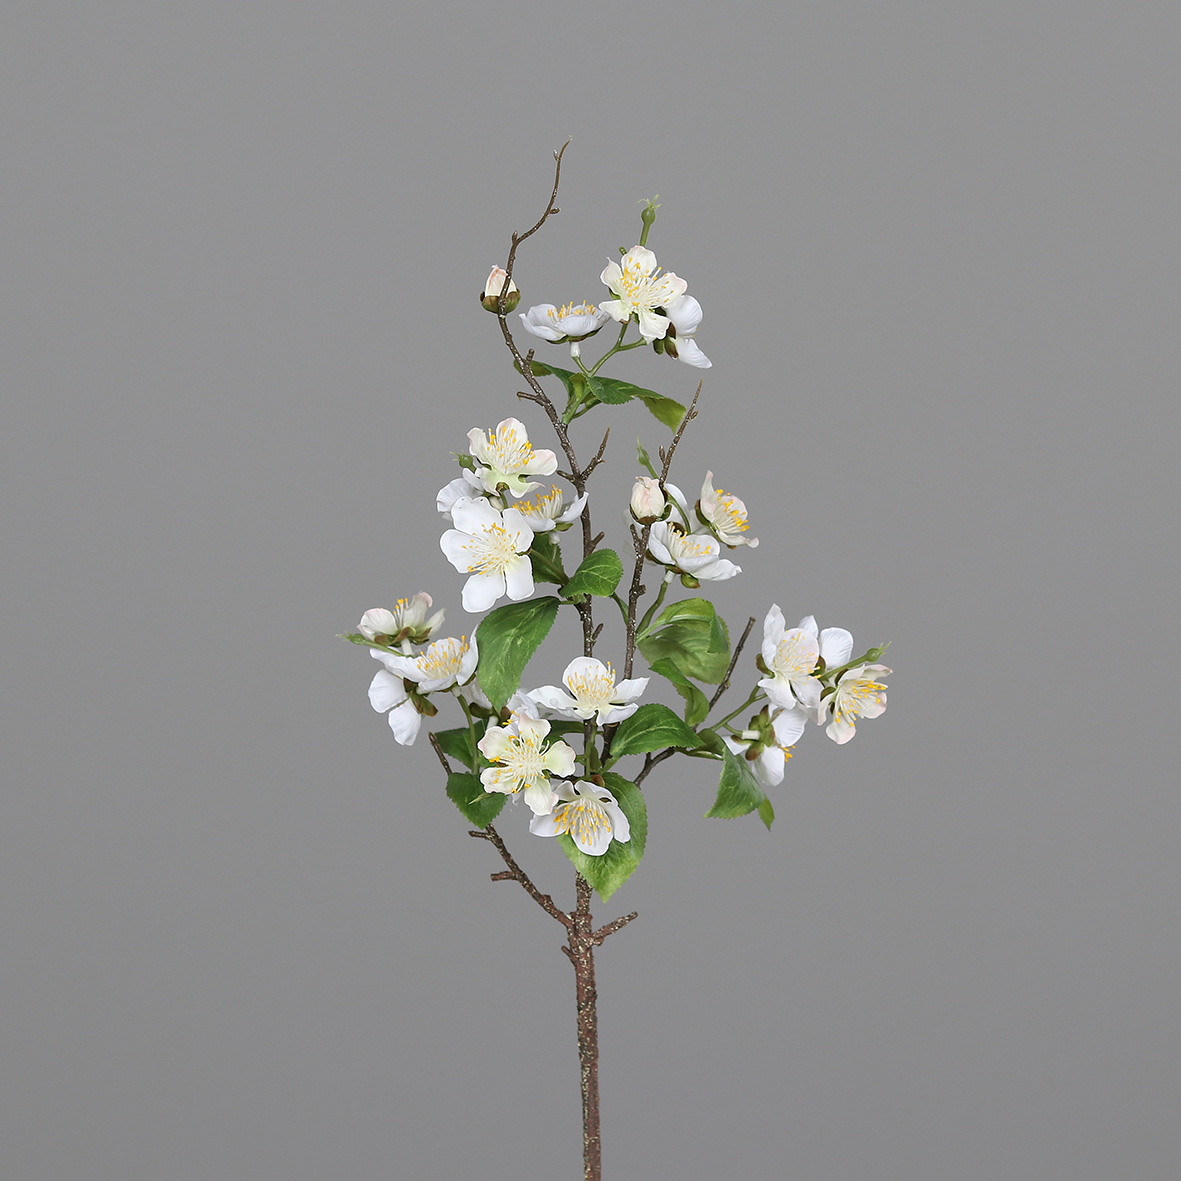 Kirschblütenzweig 68cm weiß DP Kunstblumen Seidenblumen künstliche Kirschblüten Zweige Blumen